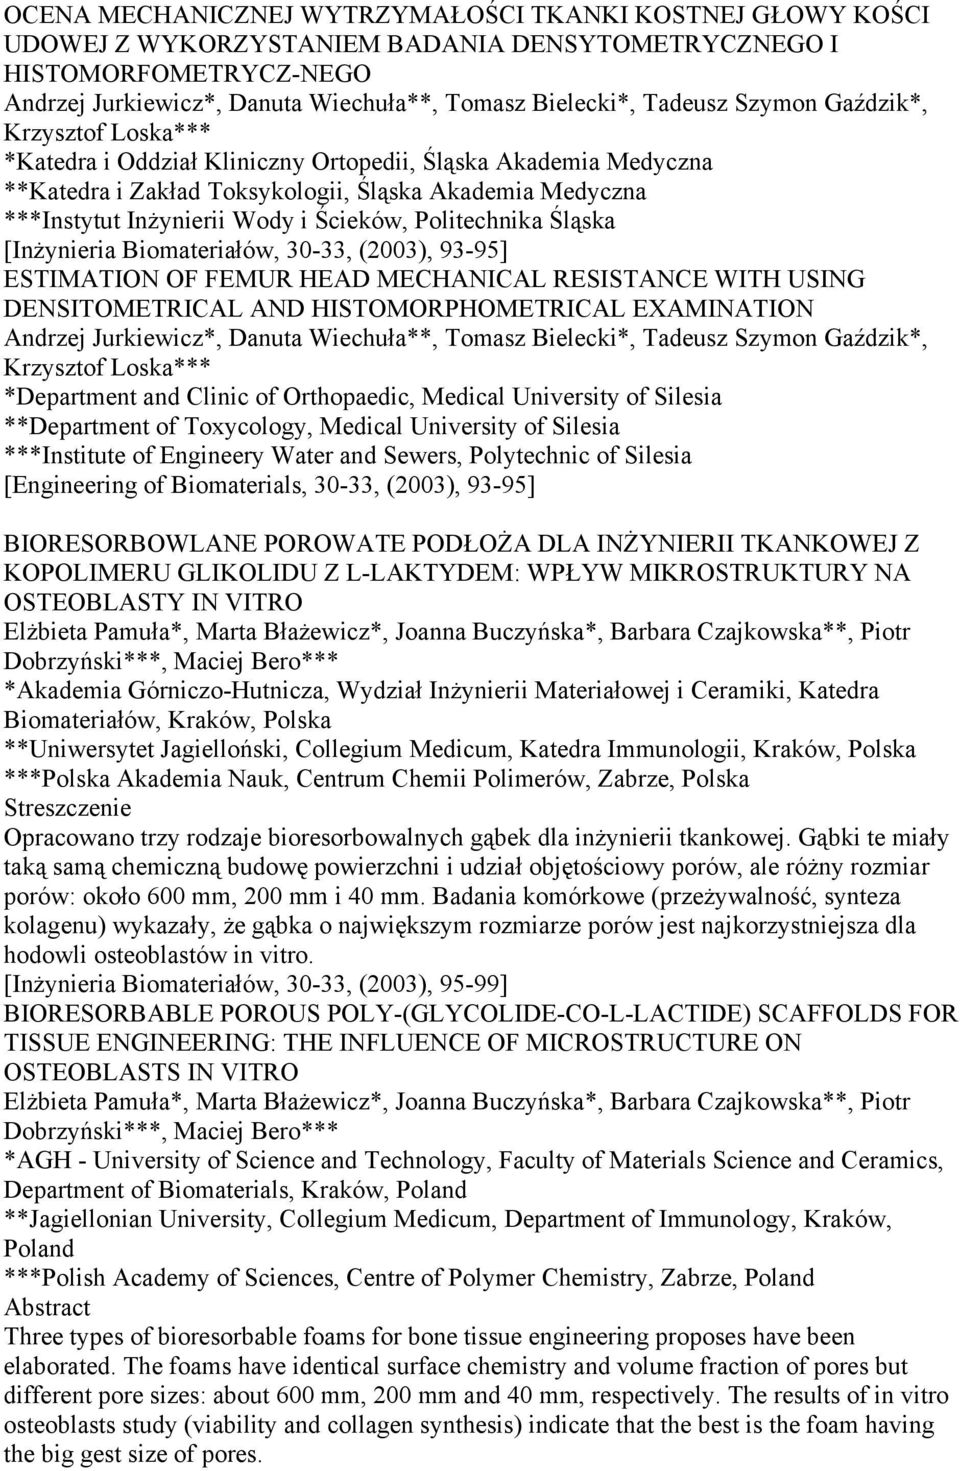 Ścieków, Politechnika Śląska [Inżynieria Biomateriałów, 30-33, (2003), 93-95] ESTIMATION OF FEMUR HEAD MECHANICAL RESISTANCE WITH USING DENSITOMETRICAL AND HISTOMORPHOMETRICAL EXAMINATION Andrzej